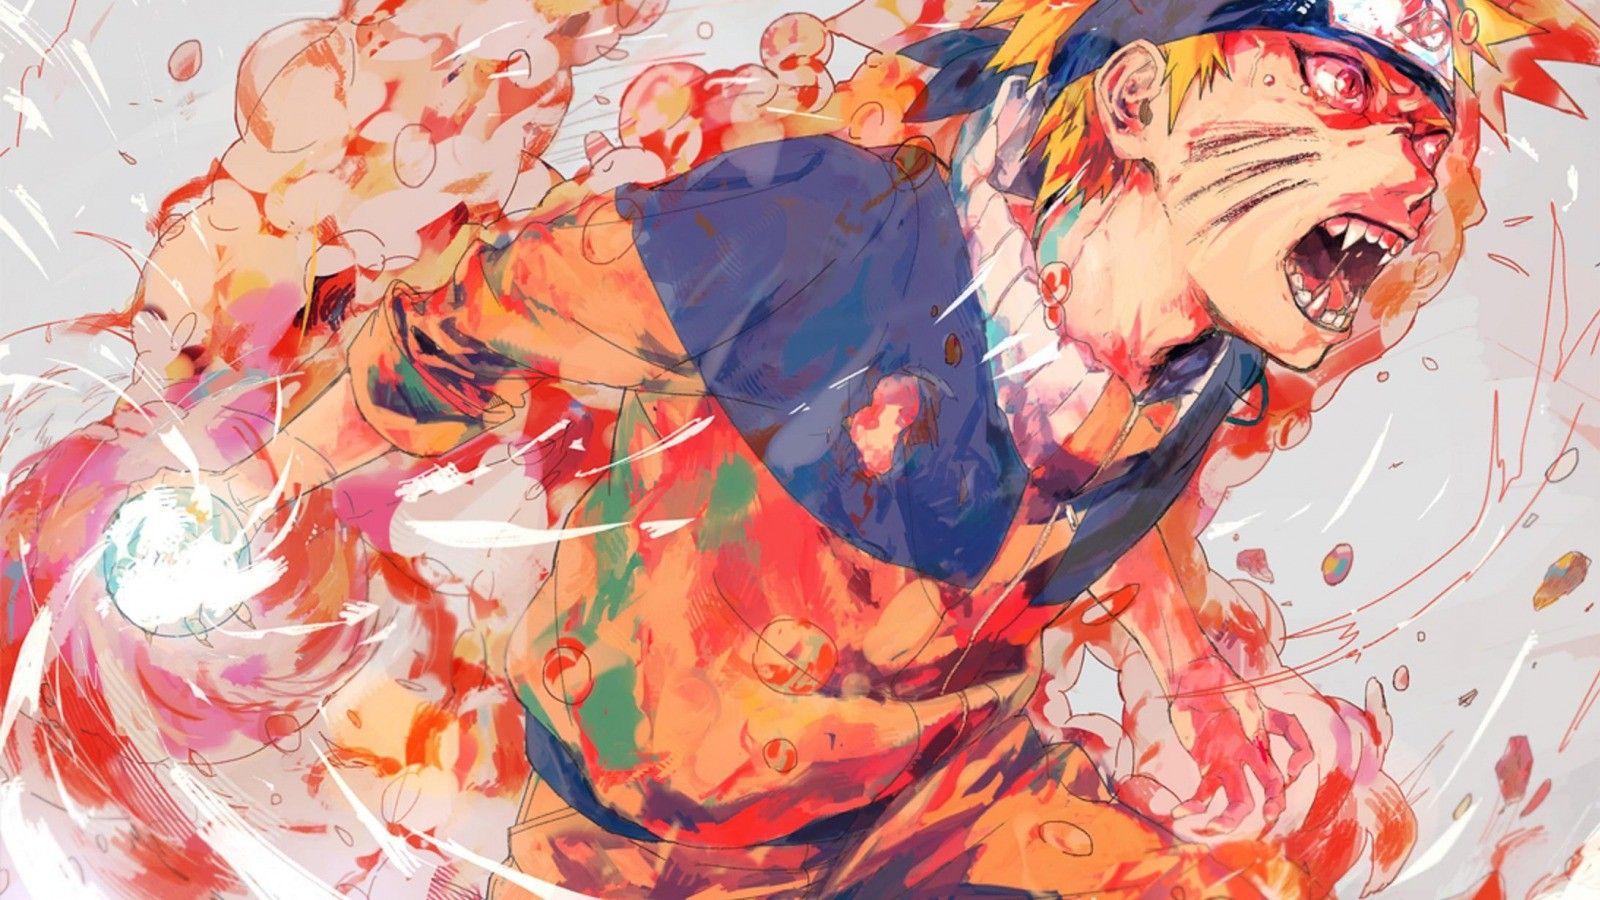 Naruto Fan Art Anime Boy wallpaper  1920x1200  984987  WallpaperUP